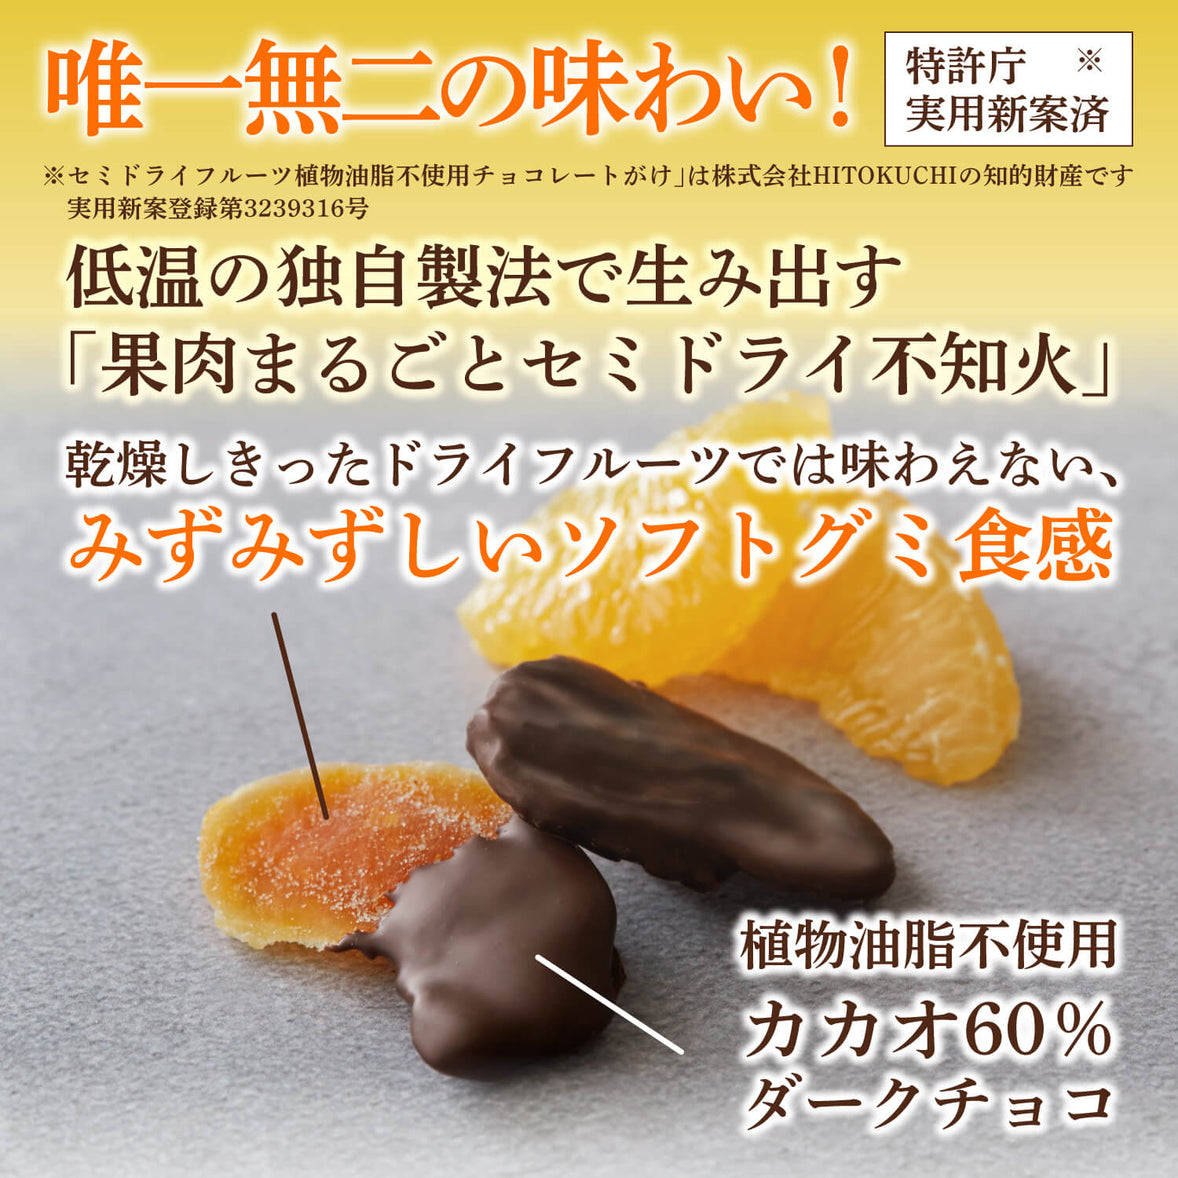 【送料無料】ひとくち不知火フルーツチョコレートサブスク定期便